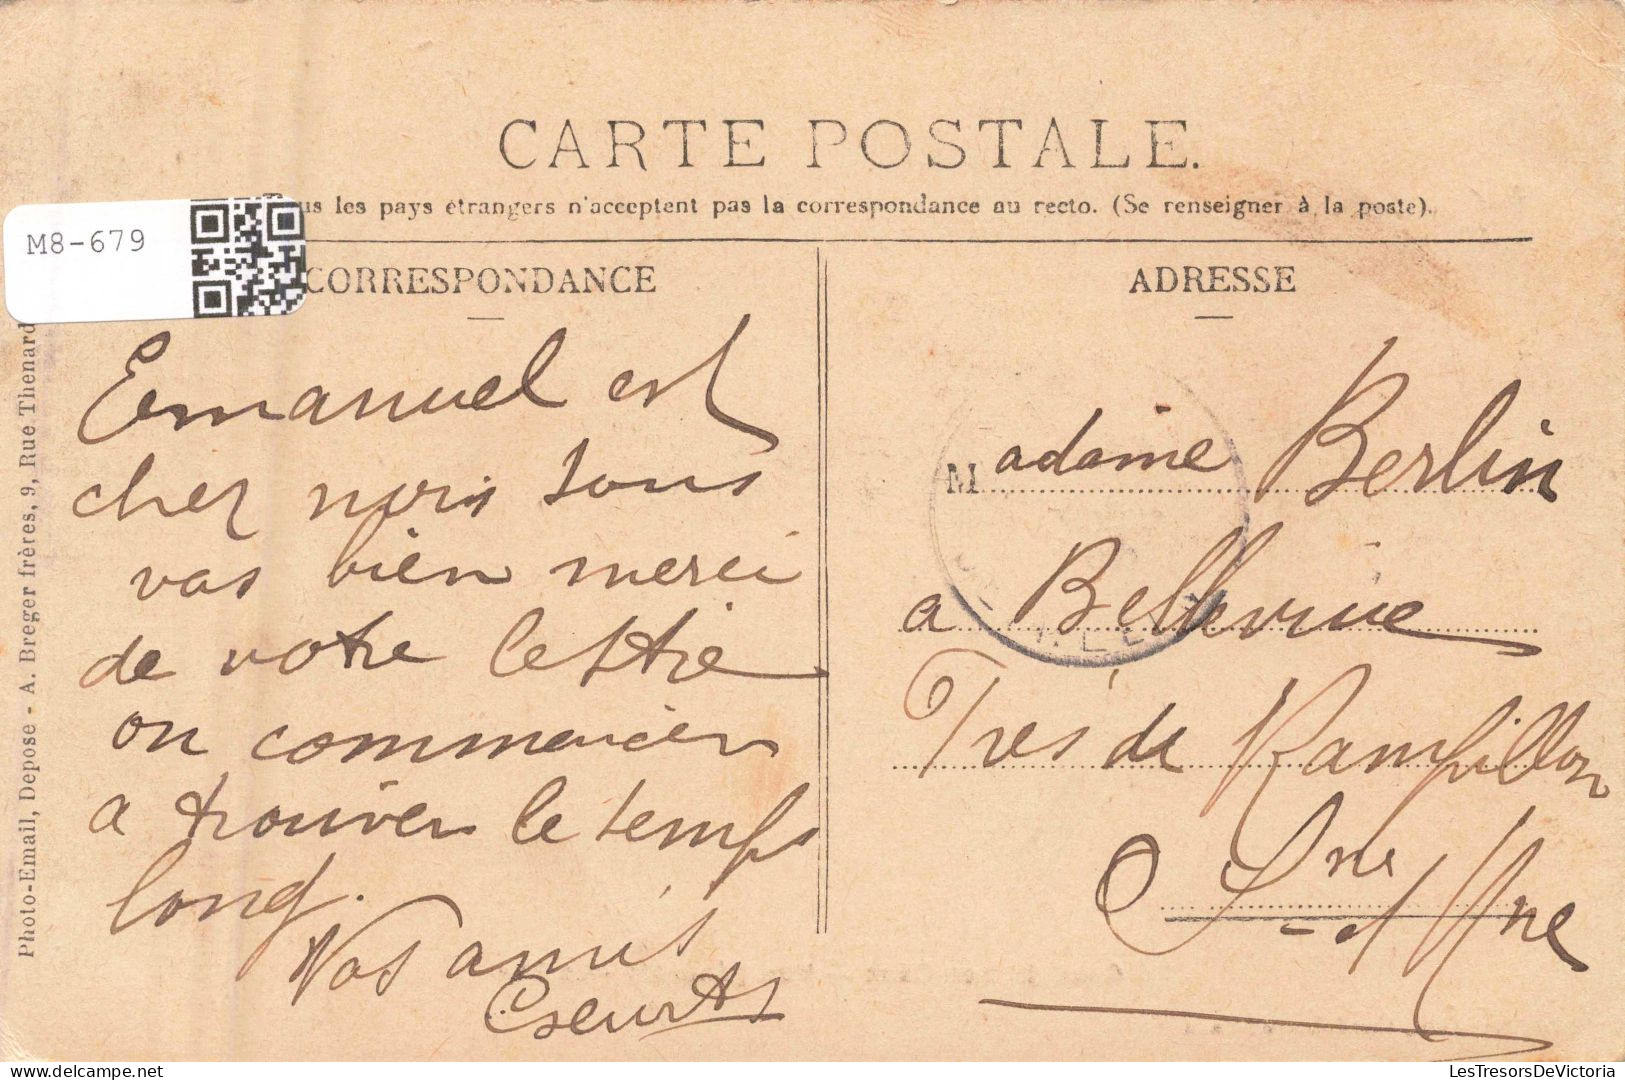 FRANCE - Caudebec En Caux - Vue Générale - Le Bac - Carte Postale Ancienne - Caudebec-en-Caux